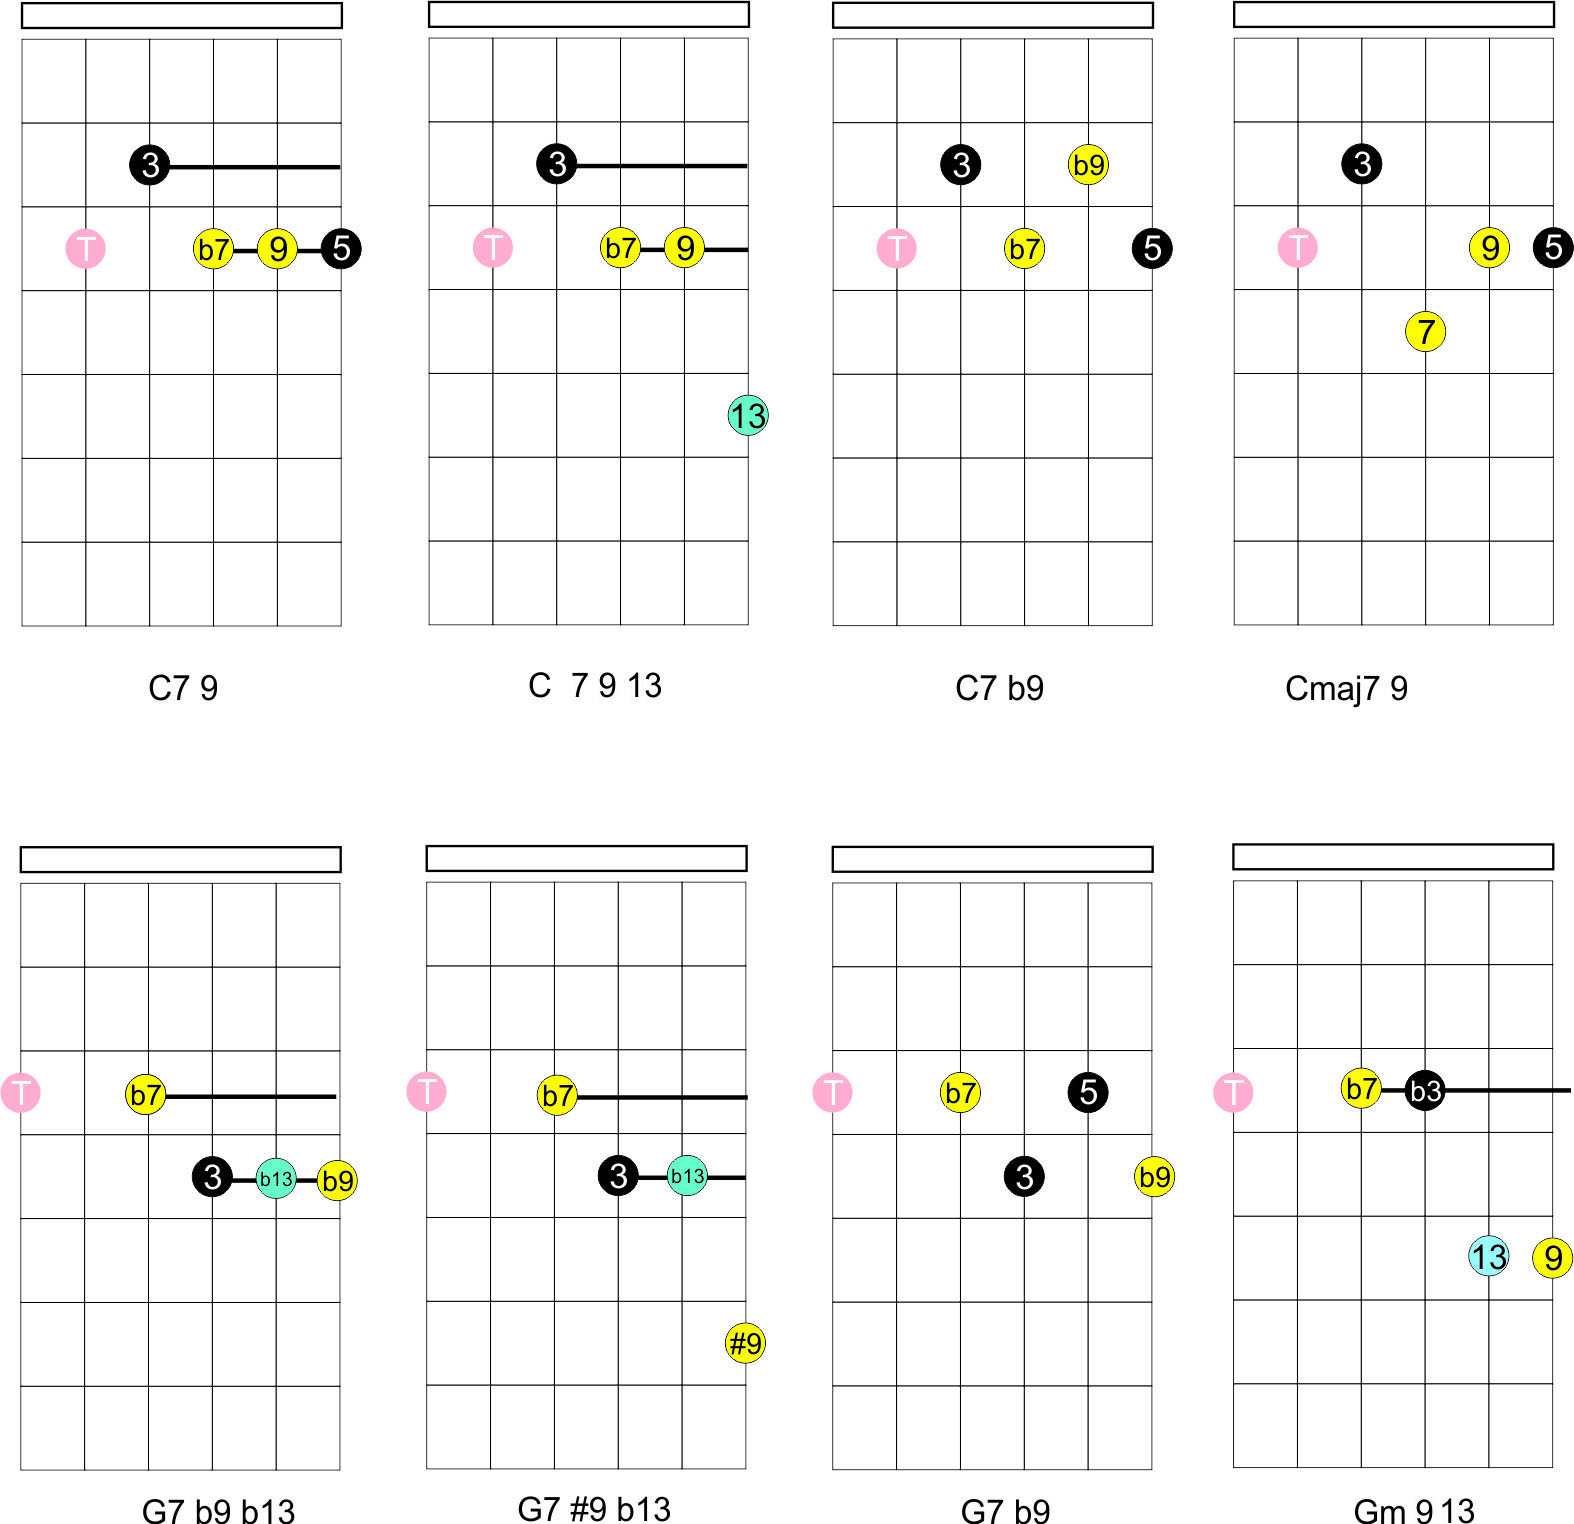 tocar acordes con tensiones 9, 11 y 13